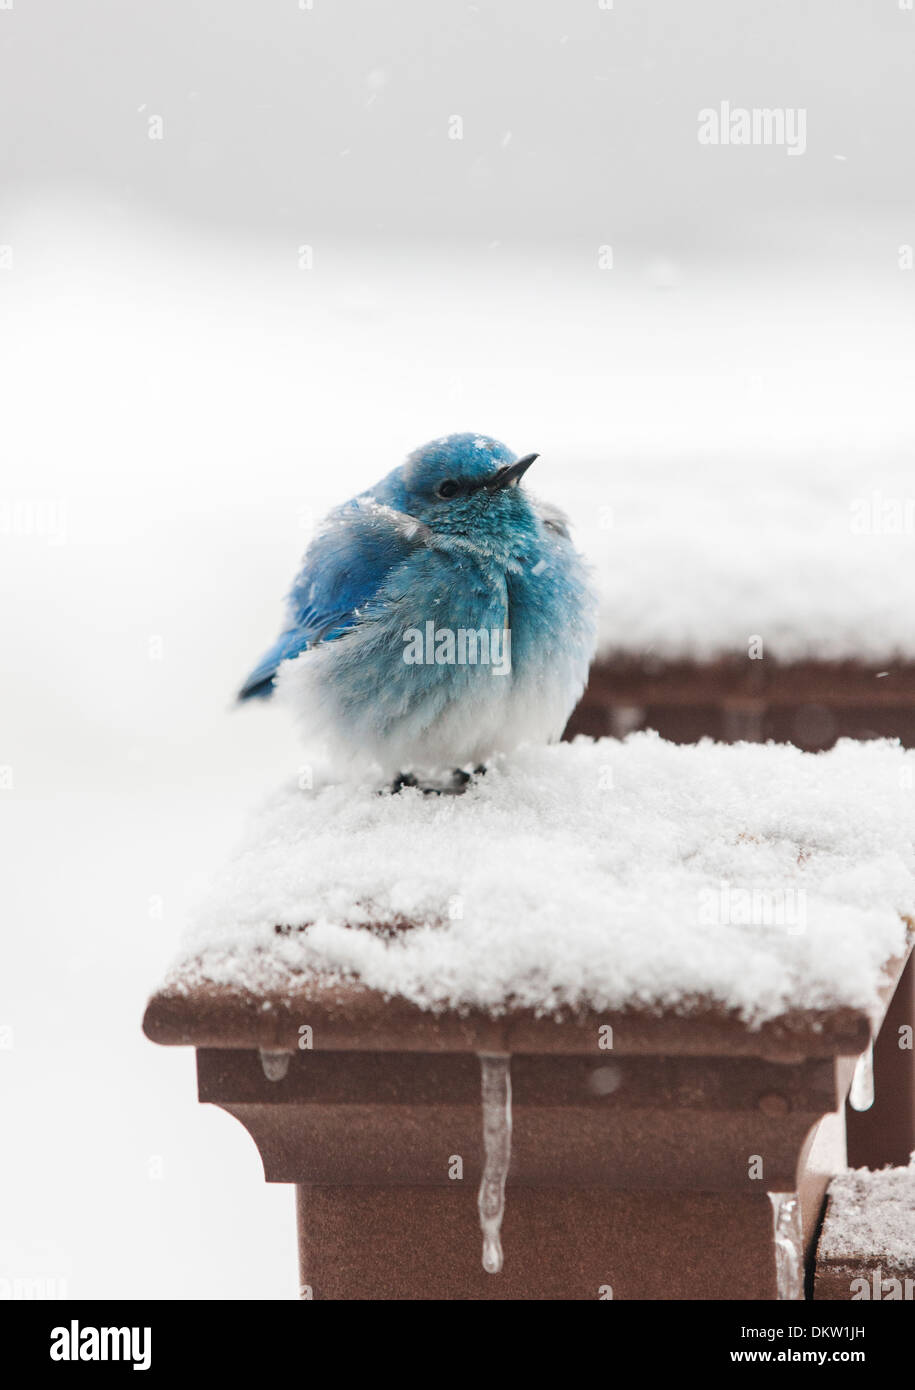 Migrating Mountain Bluebird, Sialia currucoides, seeking shelter in a Colorado springtime snow. Stock Photo